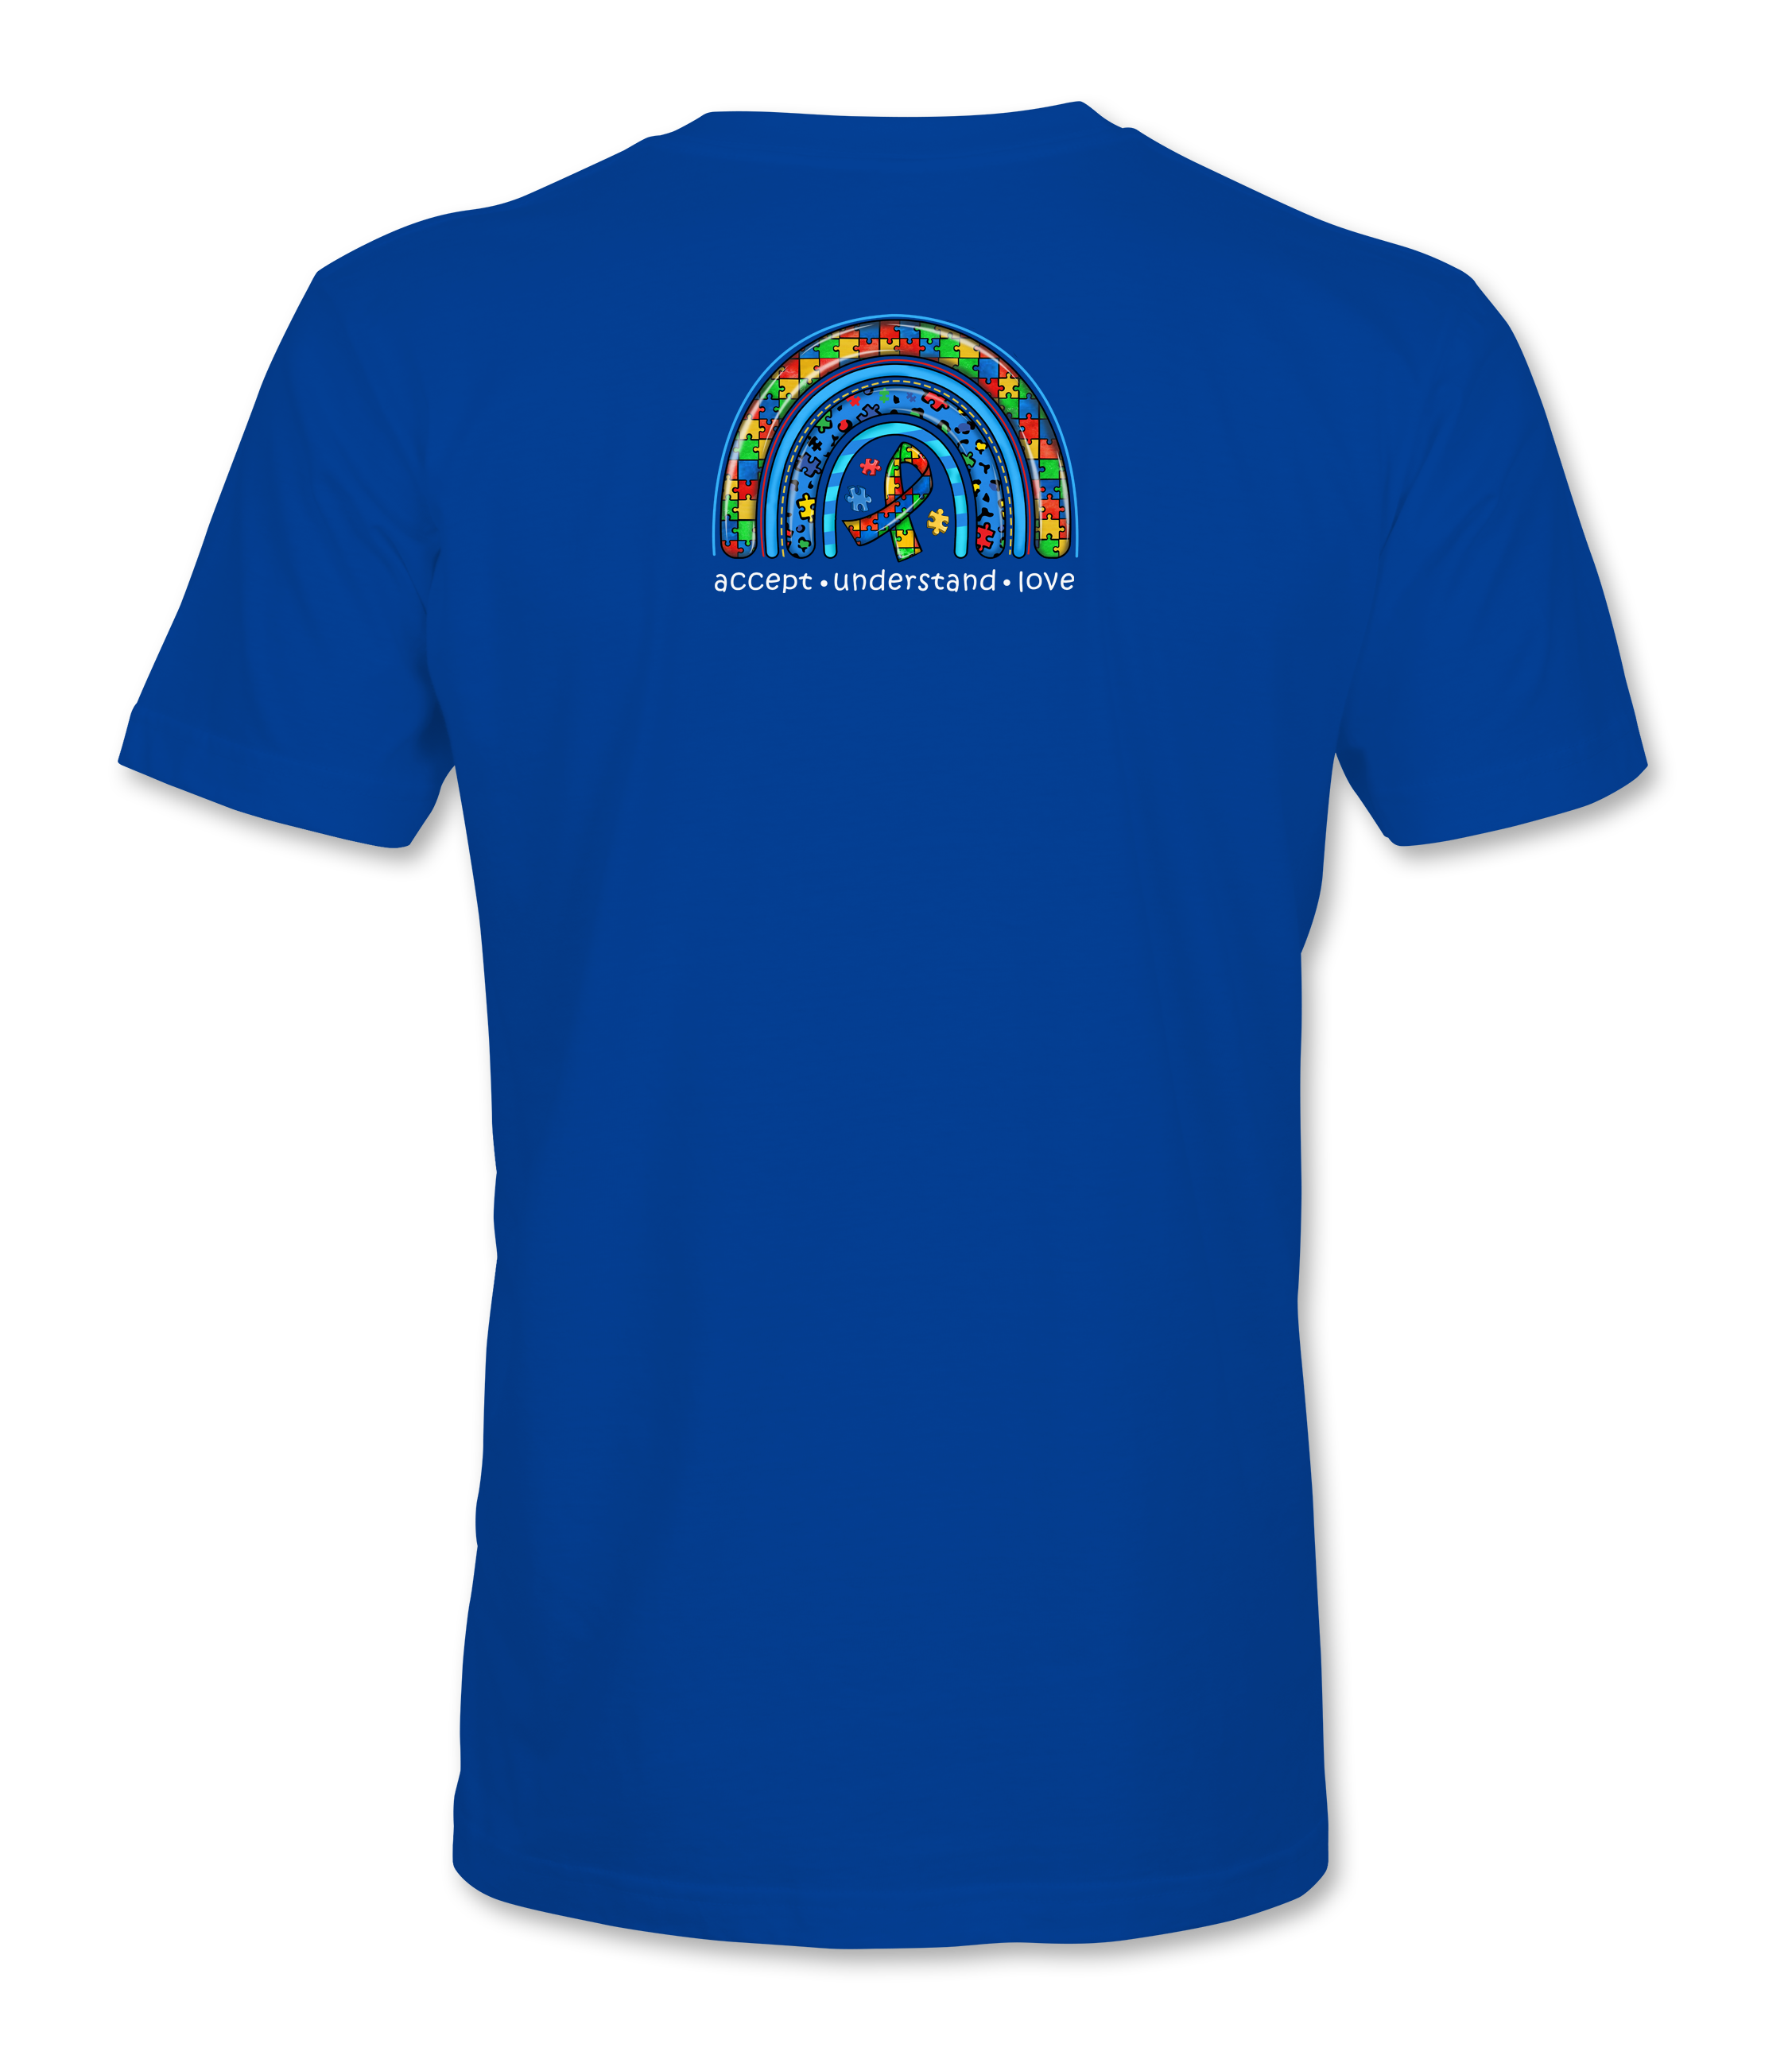 Autism Awareness Day  - T-shirt